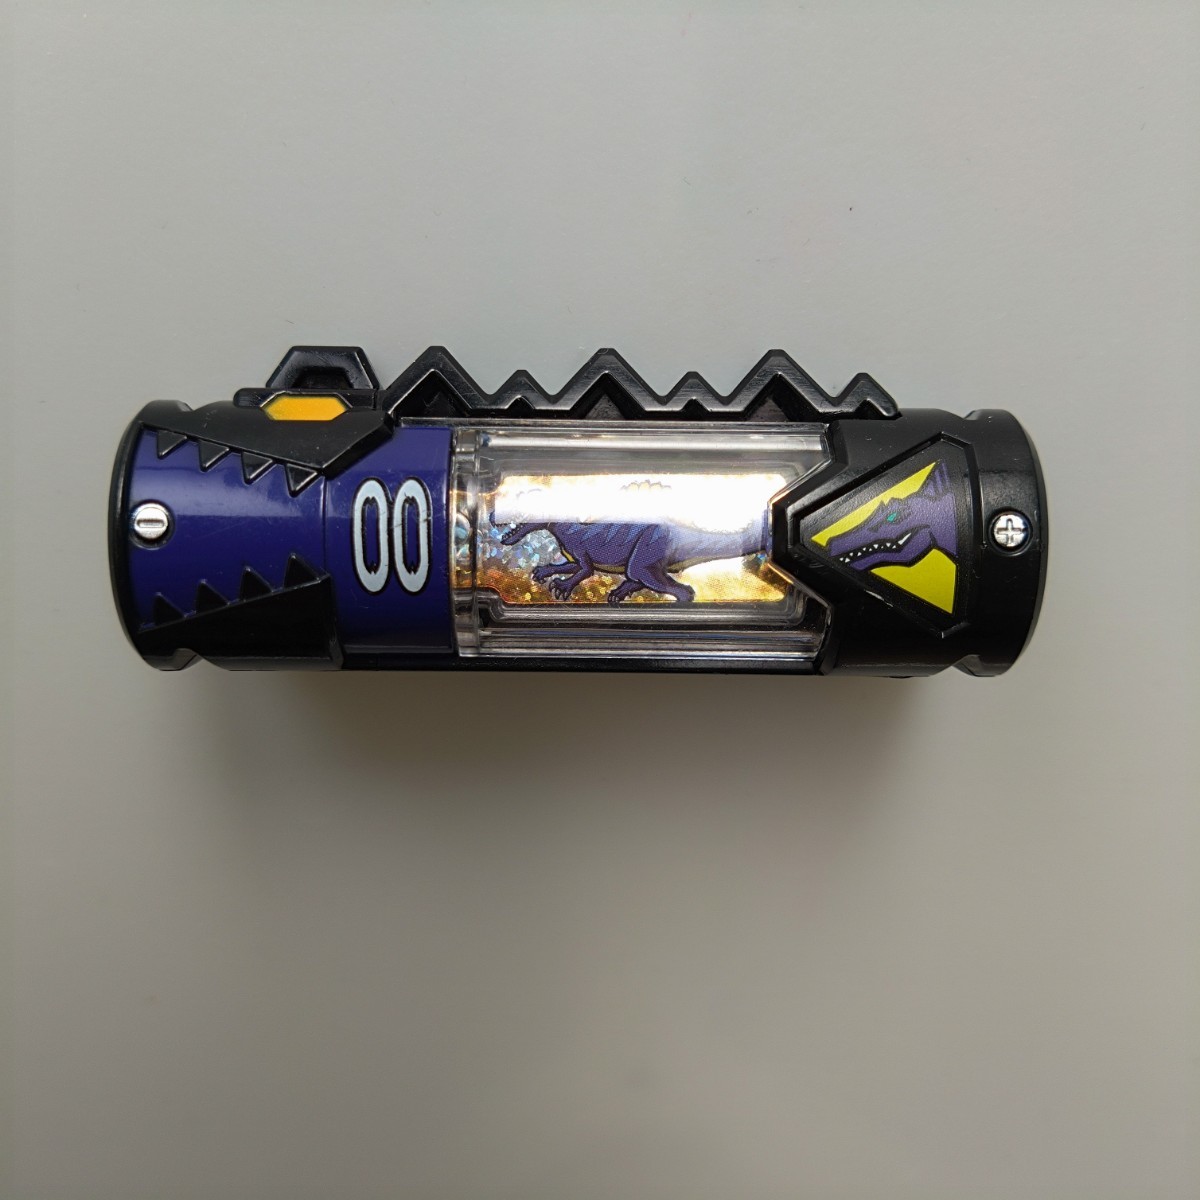 獣電池 デーボスイン Ver 00 トバスピノ 獣電戦隊キョウリュウジャー カミツキ合体 キョウリュウジャー の画像1